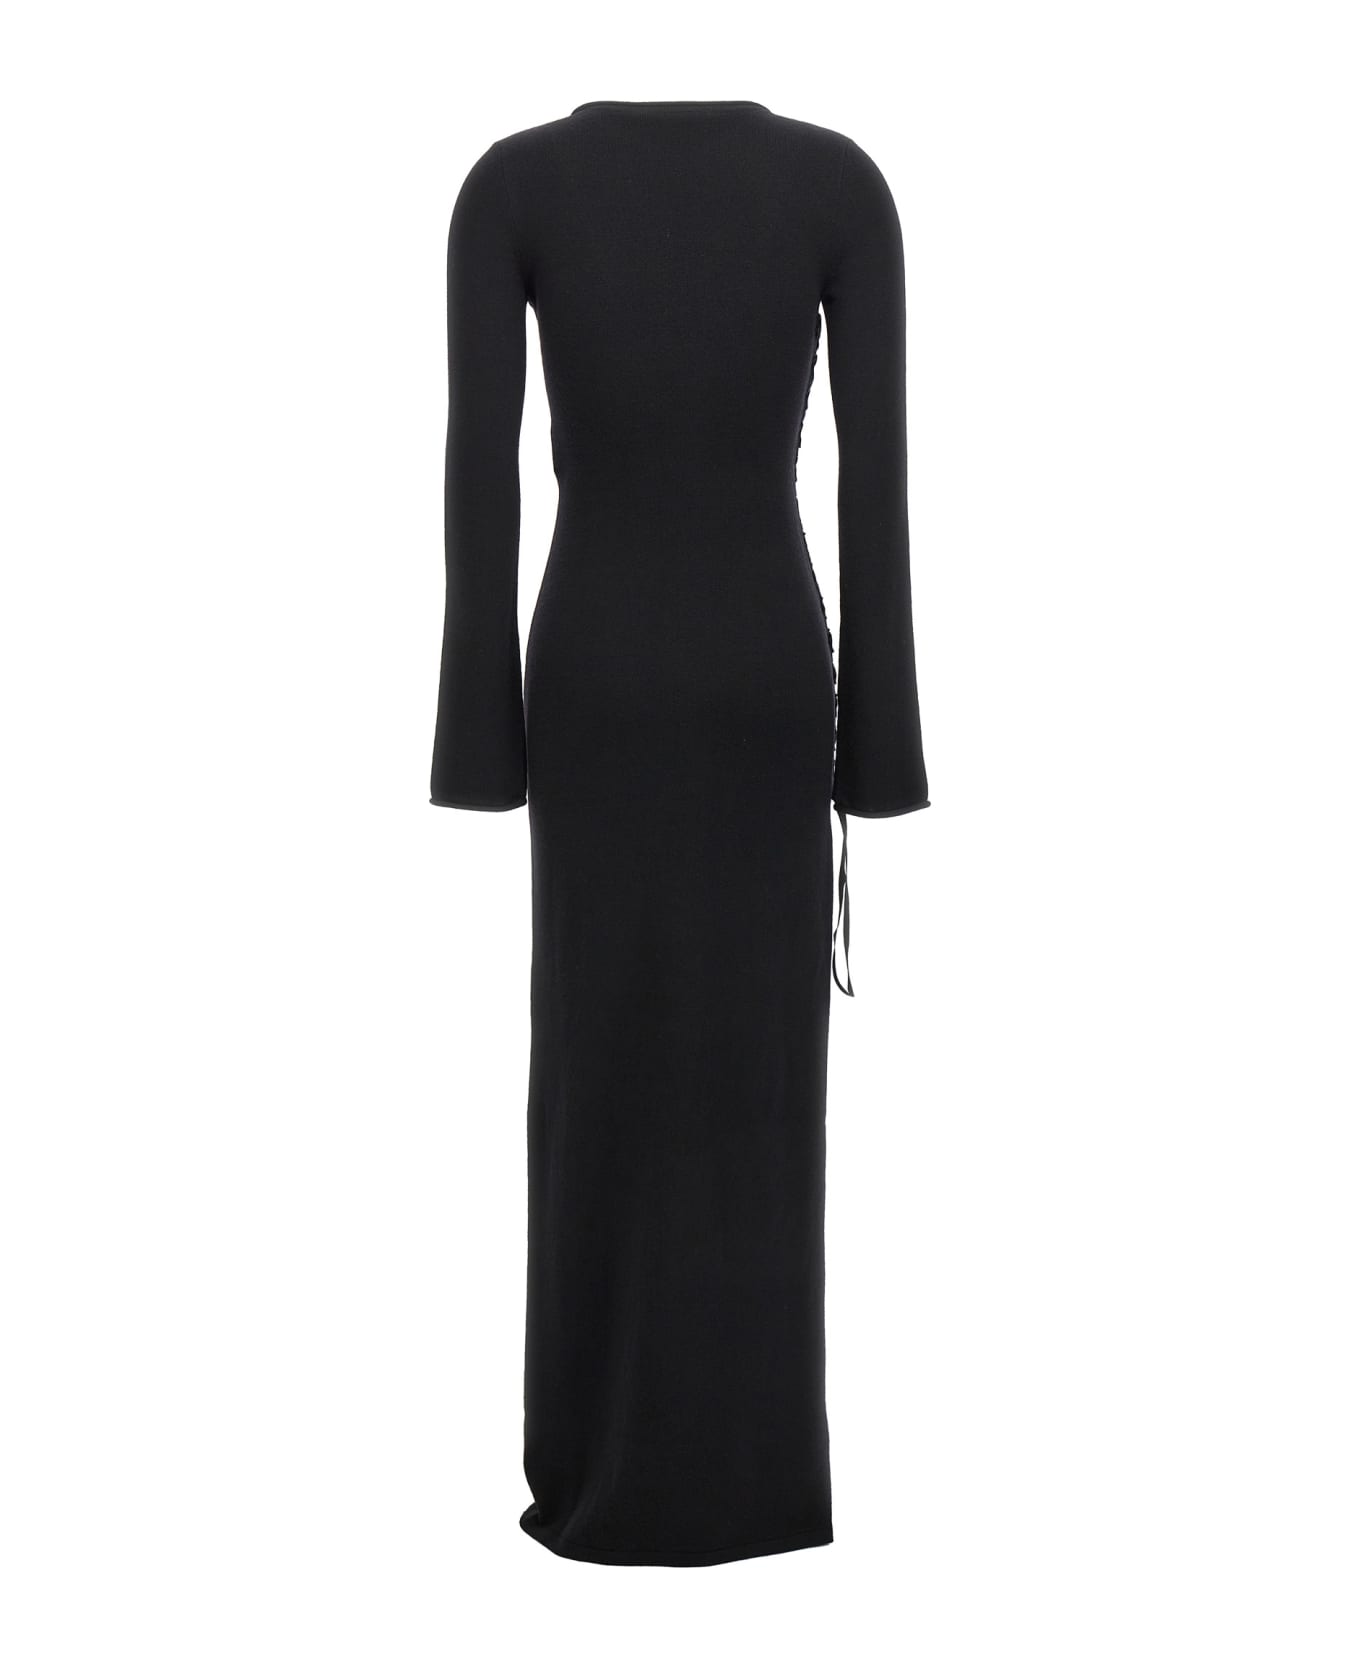 Saint Laurent Wool Lace-up Dress - Black